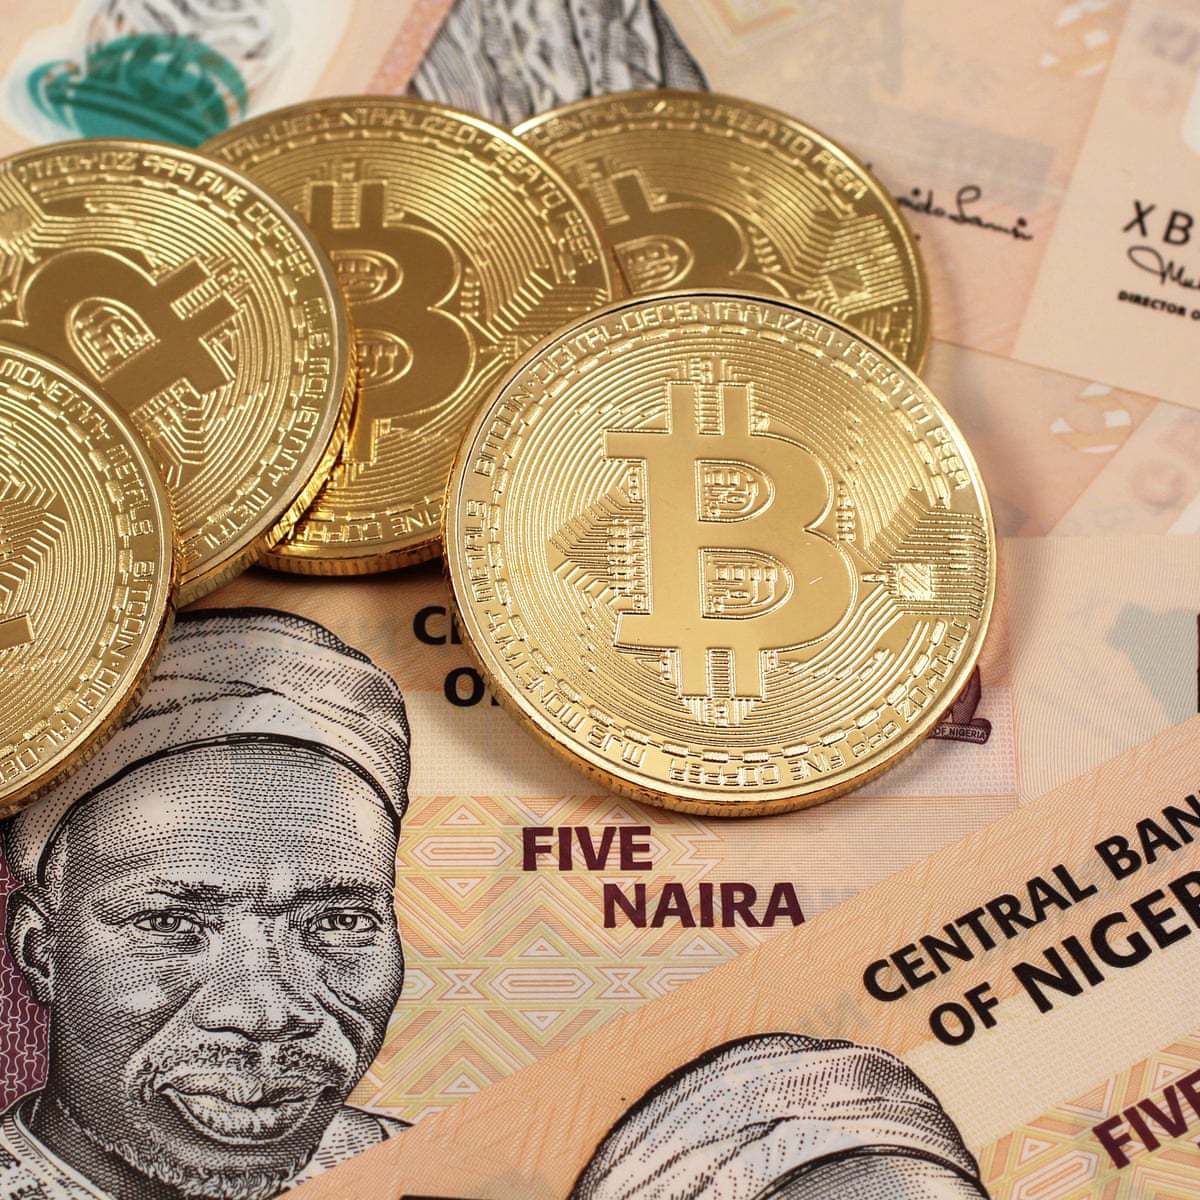 La Nigeria emerge il secondo mercato bitcoin più grande al mondo in soli cinque anni ⋆ ZyCrypto